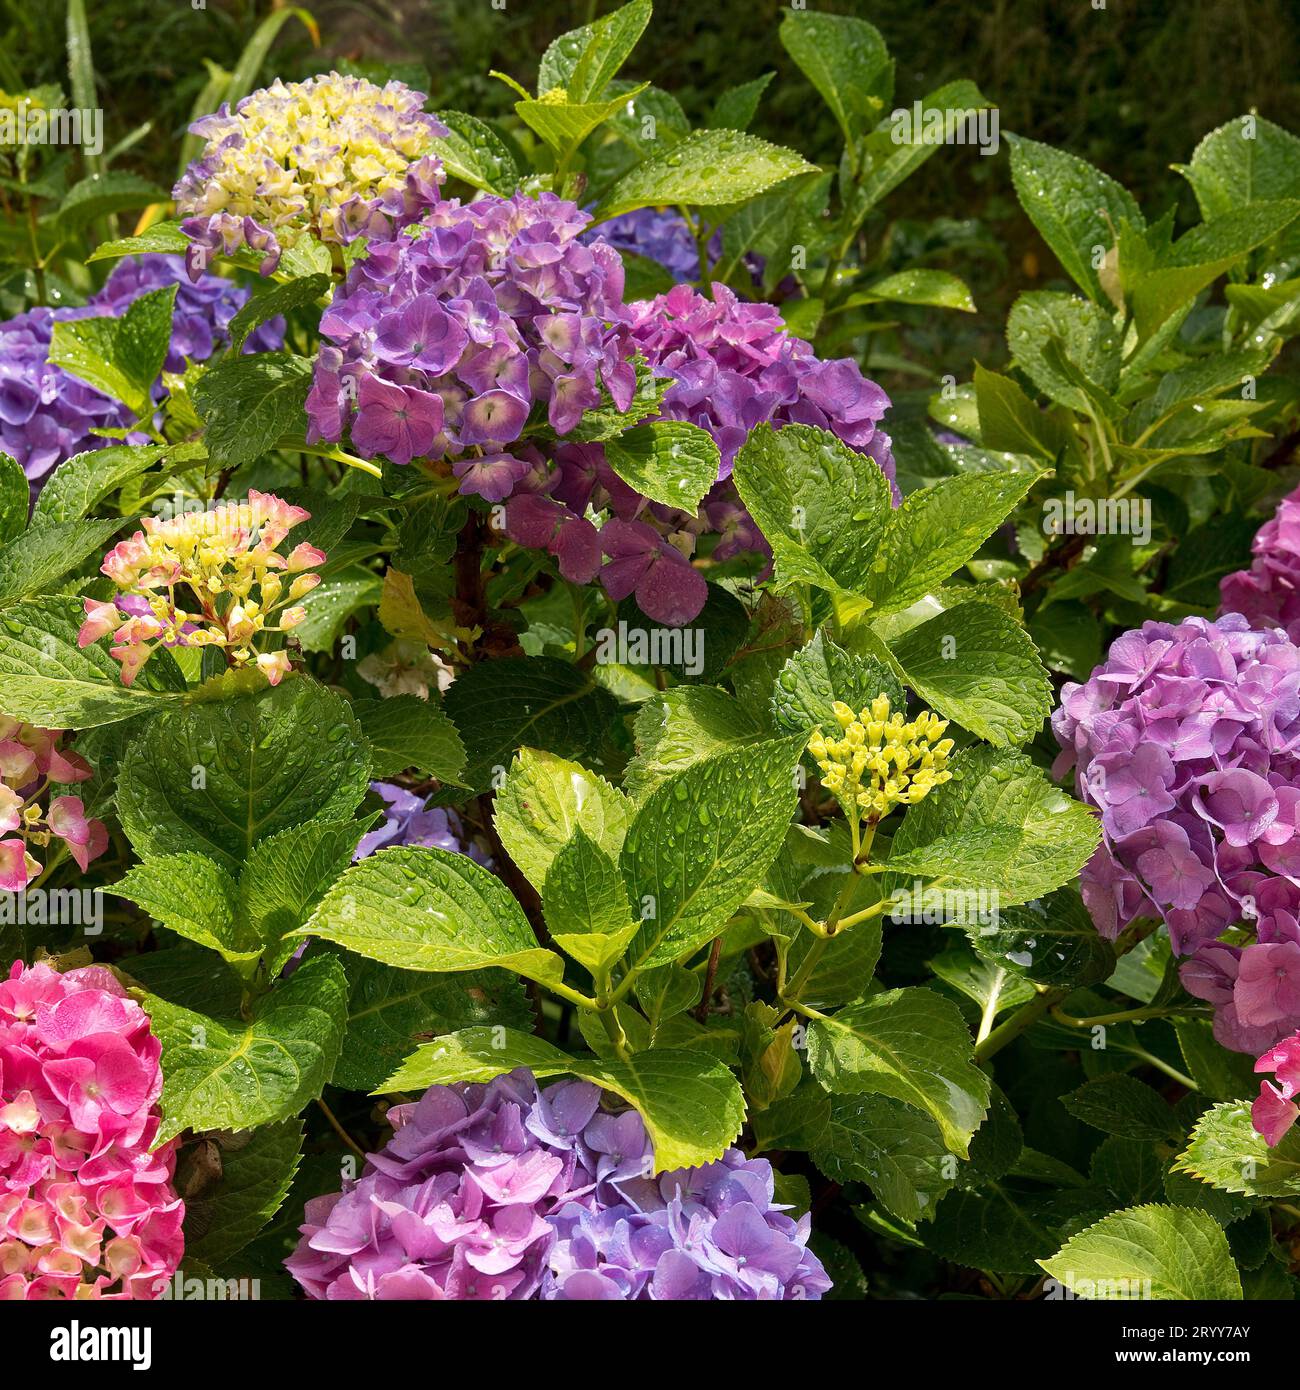 Verschiendenfarbige Blueten einer einzigen Gartenhortensie, Hydrangea macrophylla, Die Bluetenfarbe haengt vom pH-Wert des Bodens ab, Witten, Ruhrgeb Foto Stock